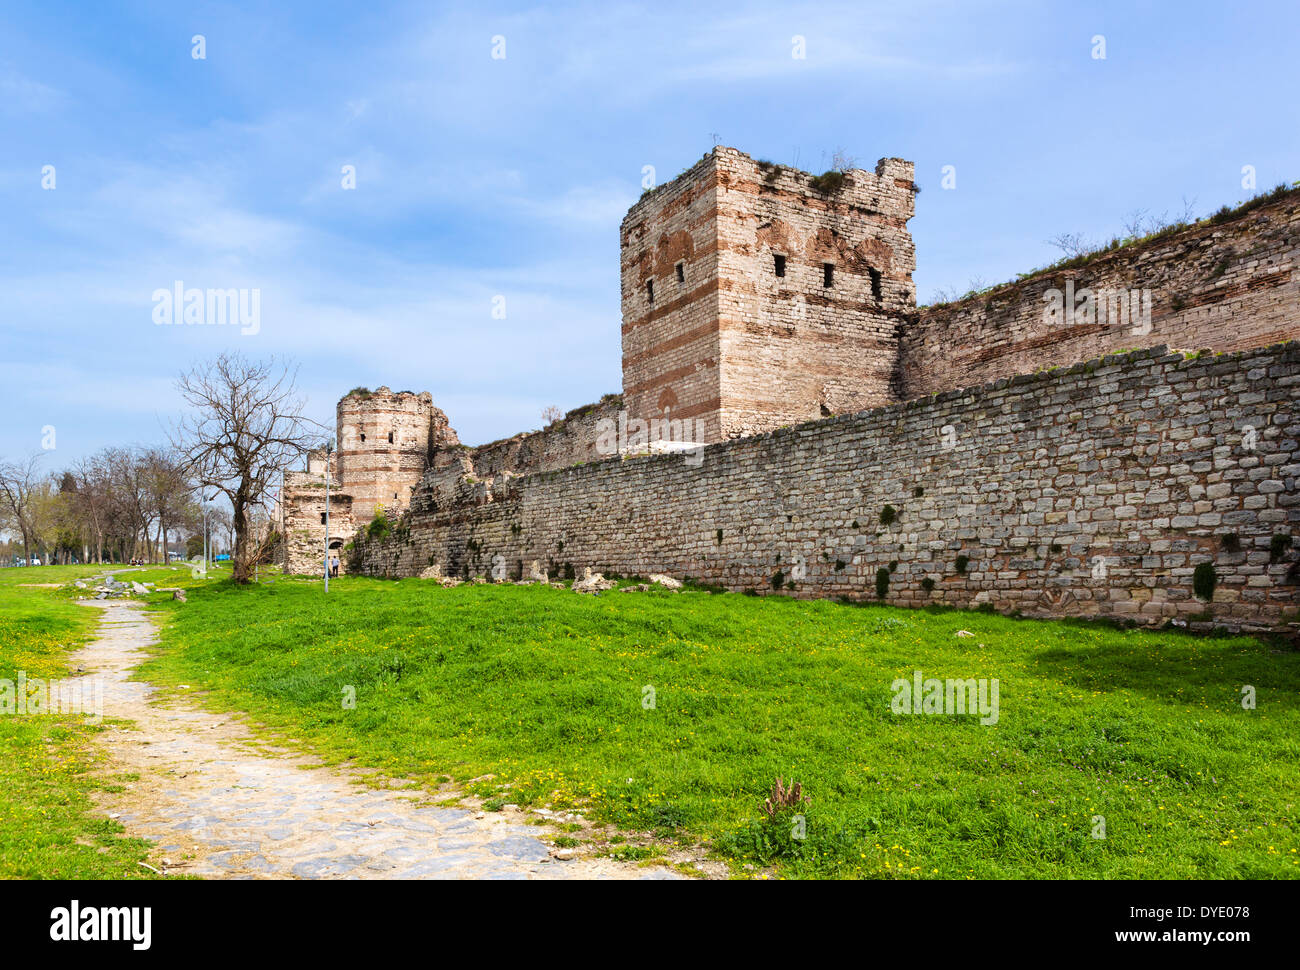 Das alte Land Wände von Theodosius II in der Nähe von 1453 Panorama Museum, Stadtteil Topkapi, Istanbul, Türkei Stockfoto